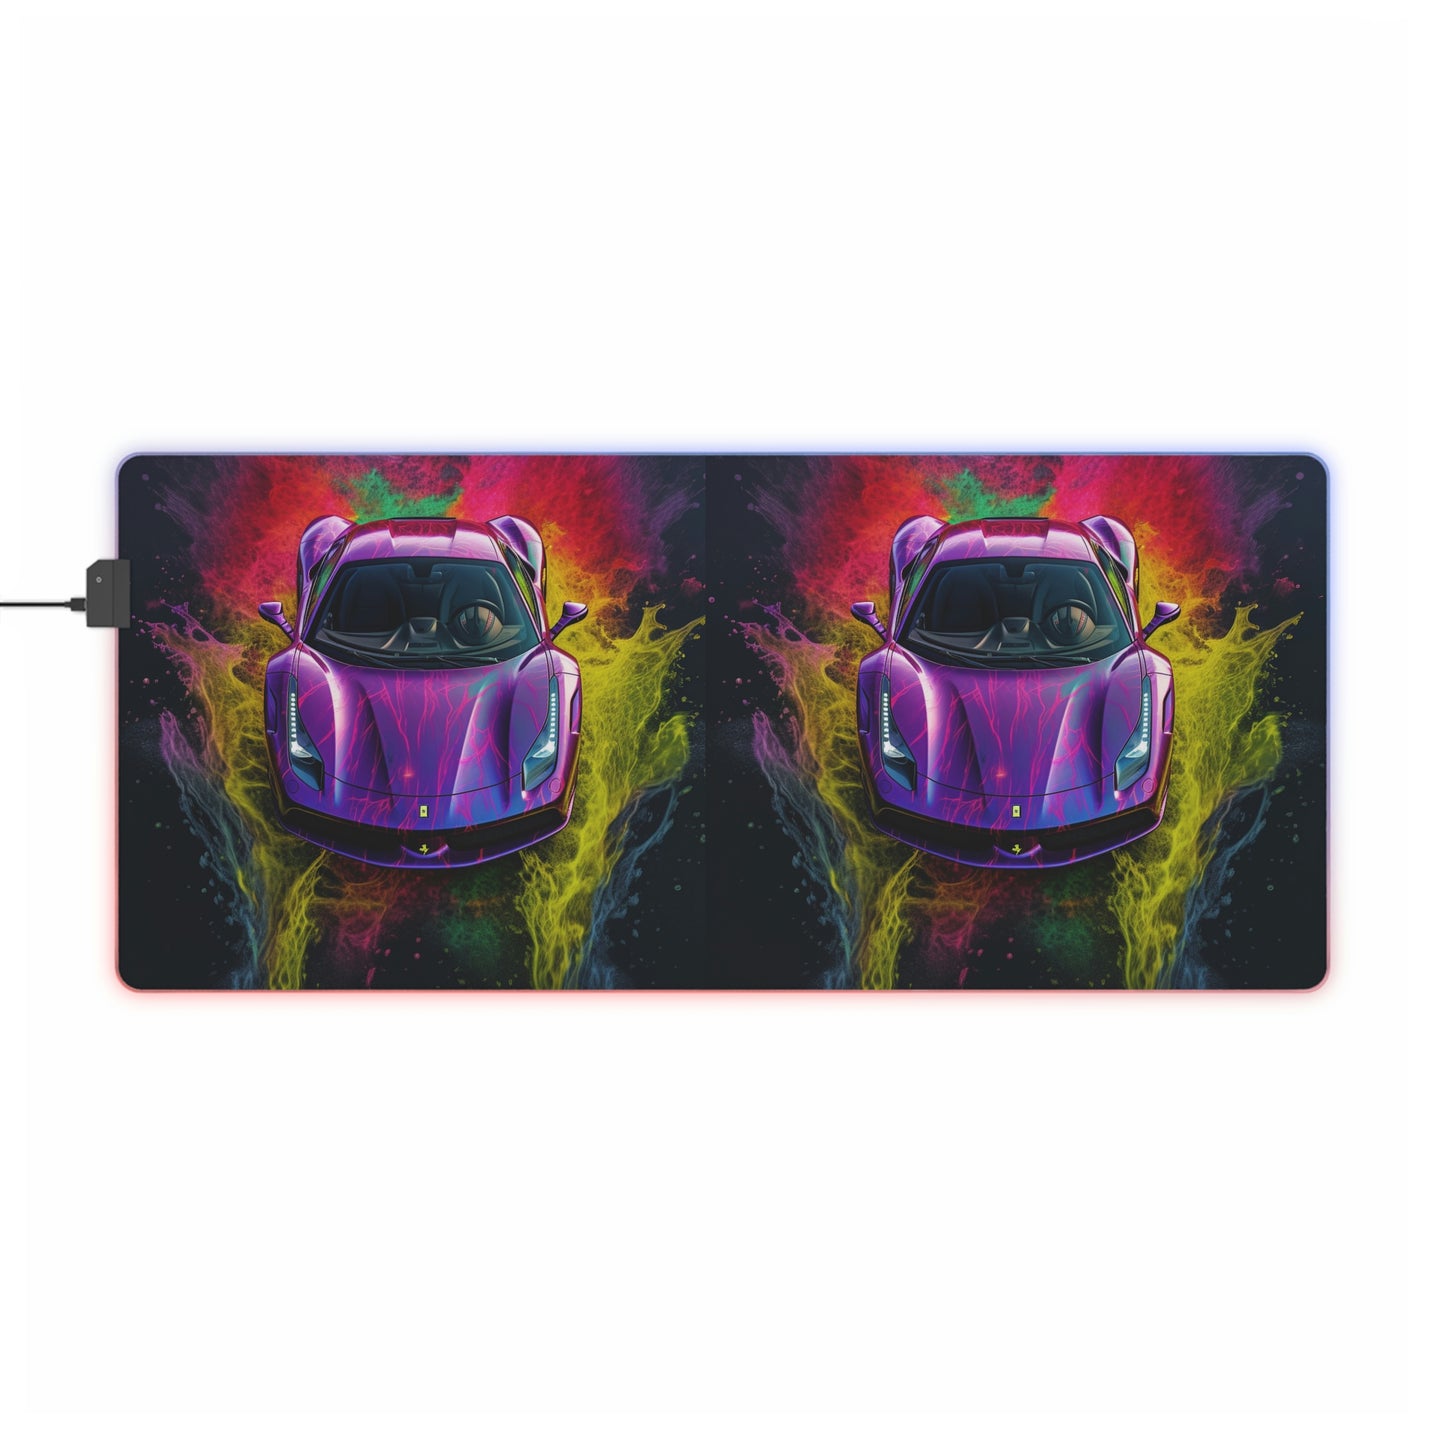 LED Gaming Mouse Pad Ferrari Water 3